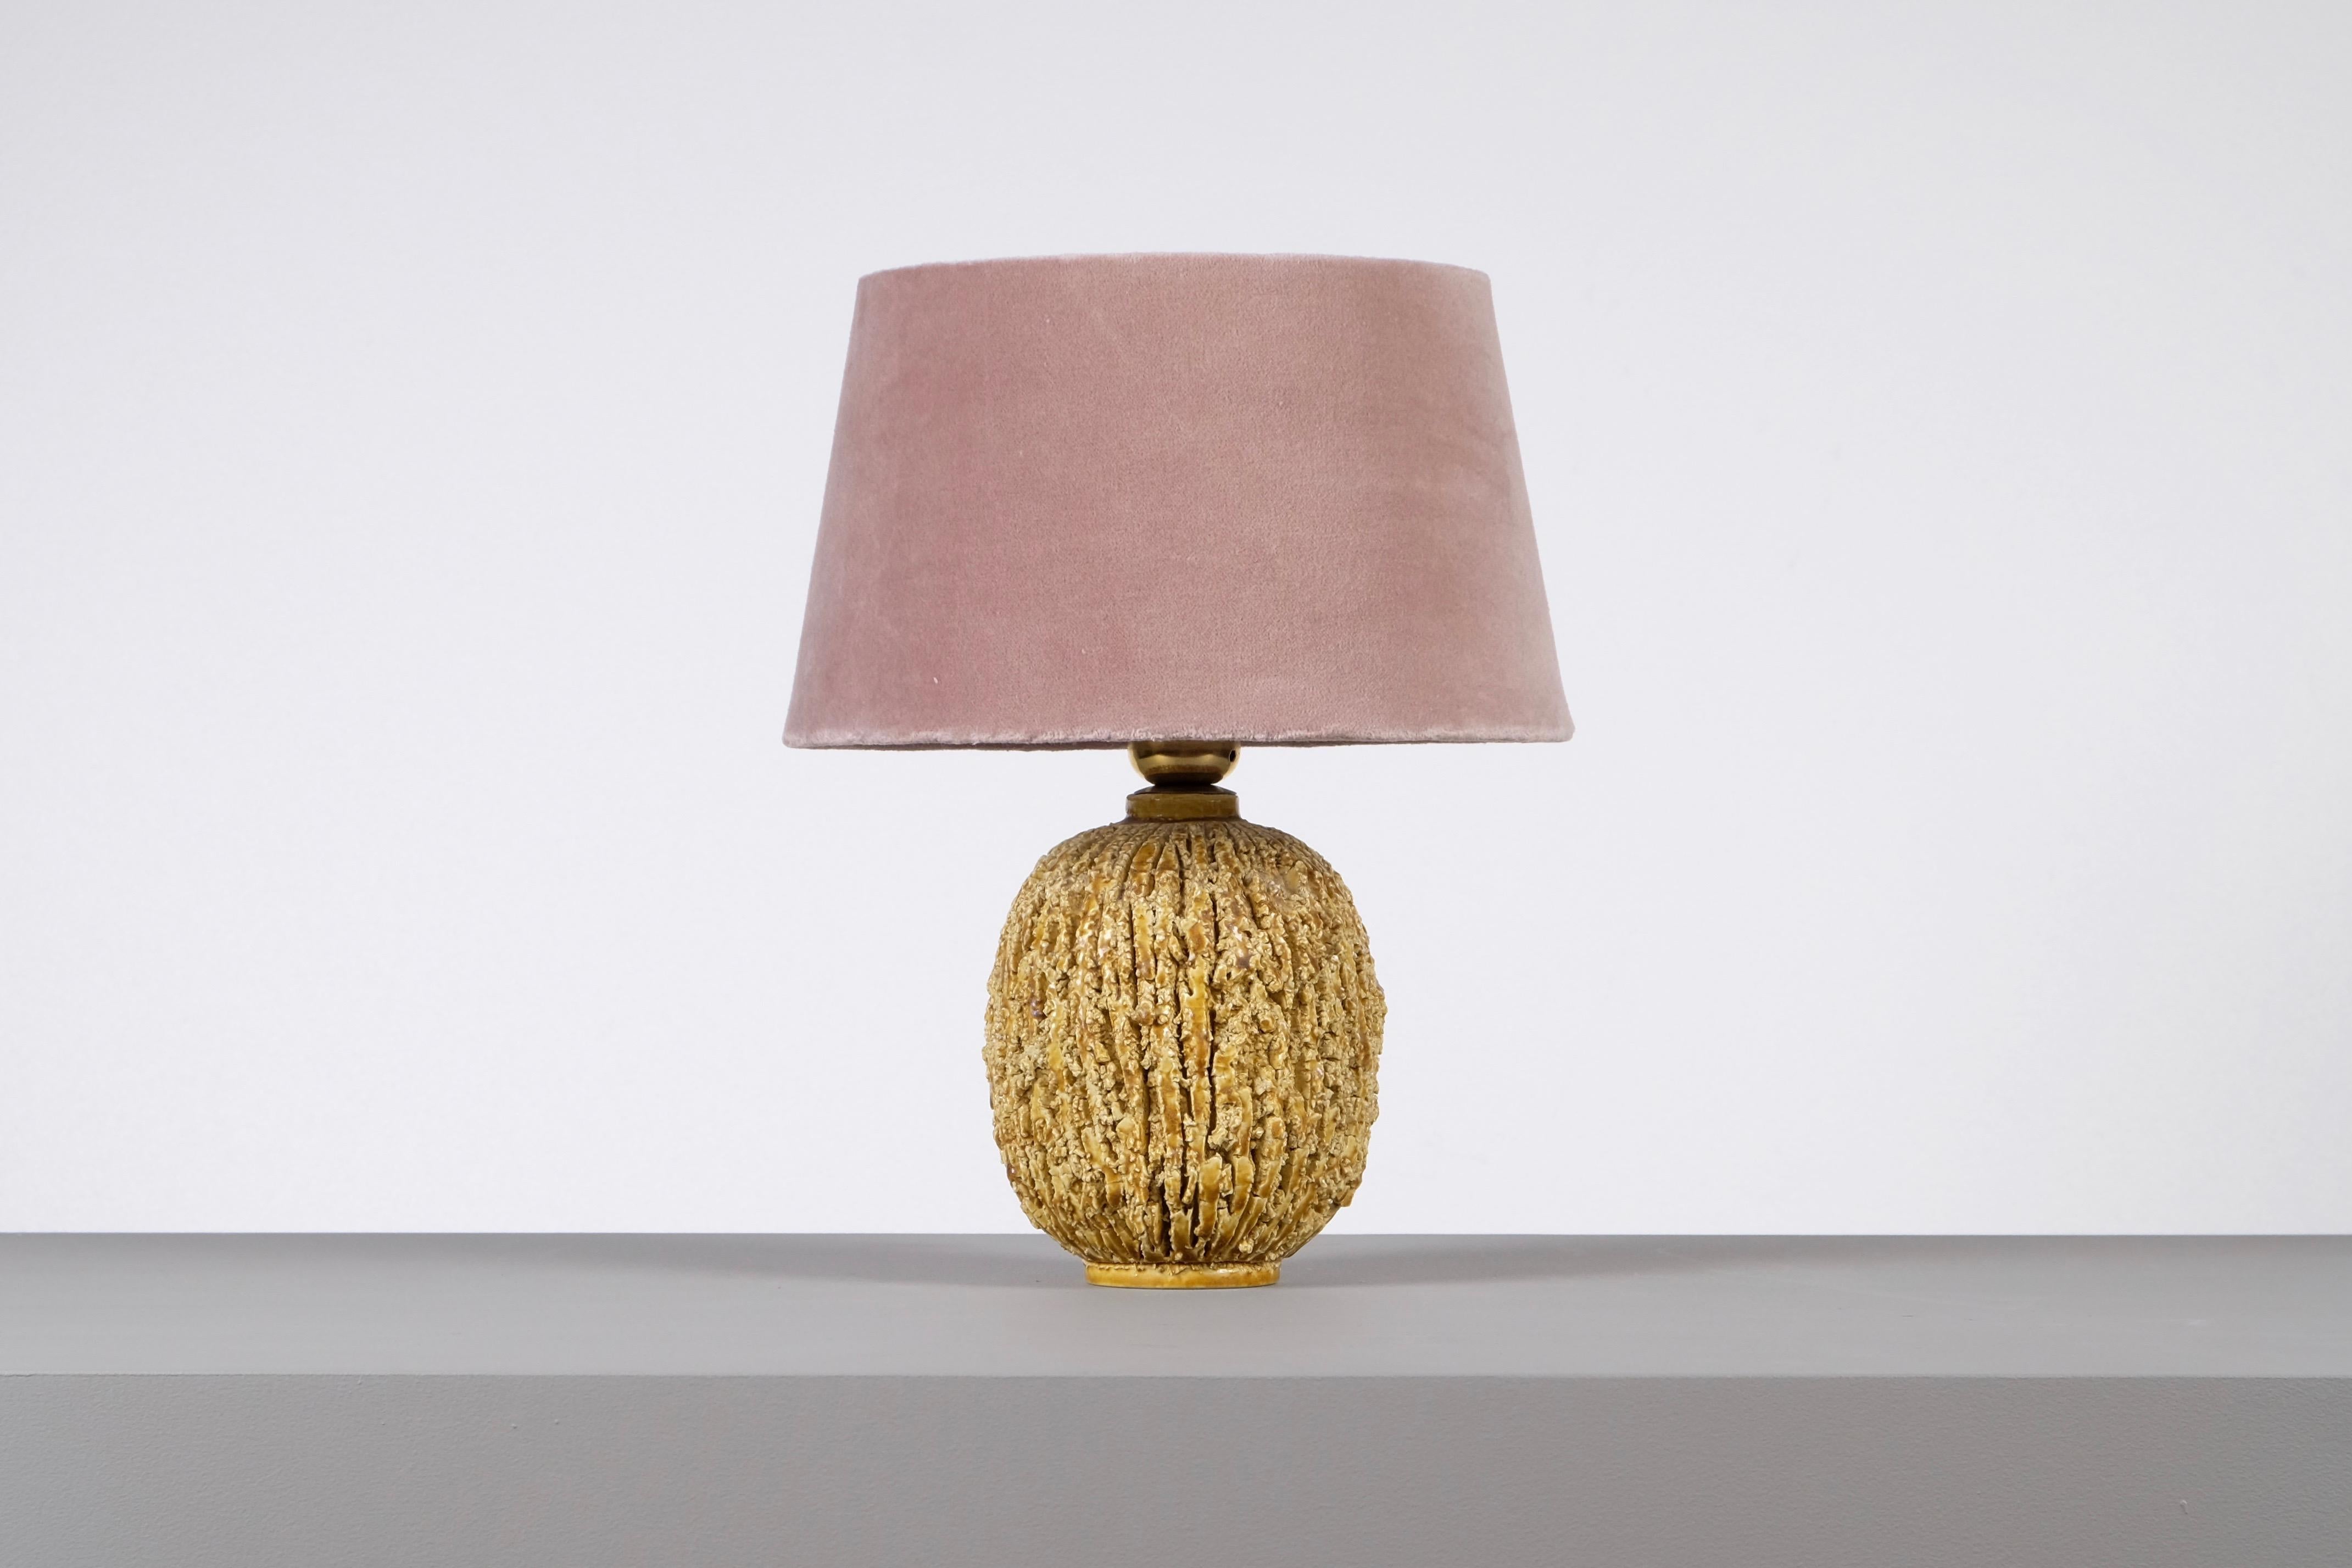 Lampe en céramique de forme bulbeuse par Gunnar Nylund, composée d'argile chamottée et émaillée d'une glaçure lustrée de couleur or. Produit par Rörstrand.
Estampillé. Mesures : Hauteur incluant l'abat-jour 33 cm. Nouveau câblage.